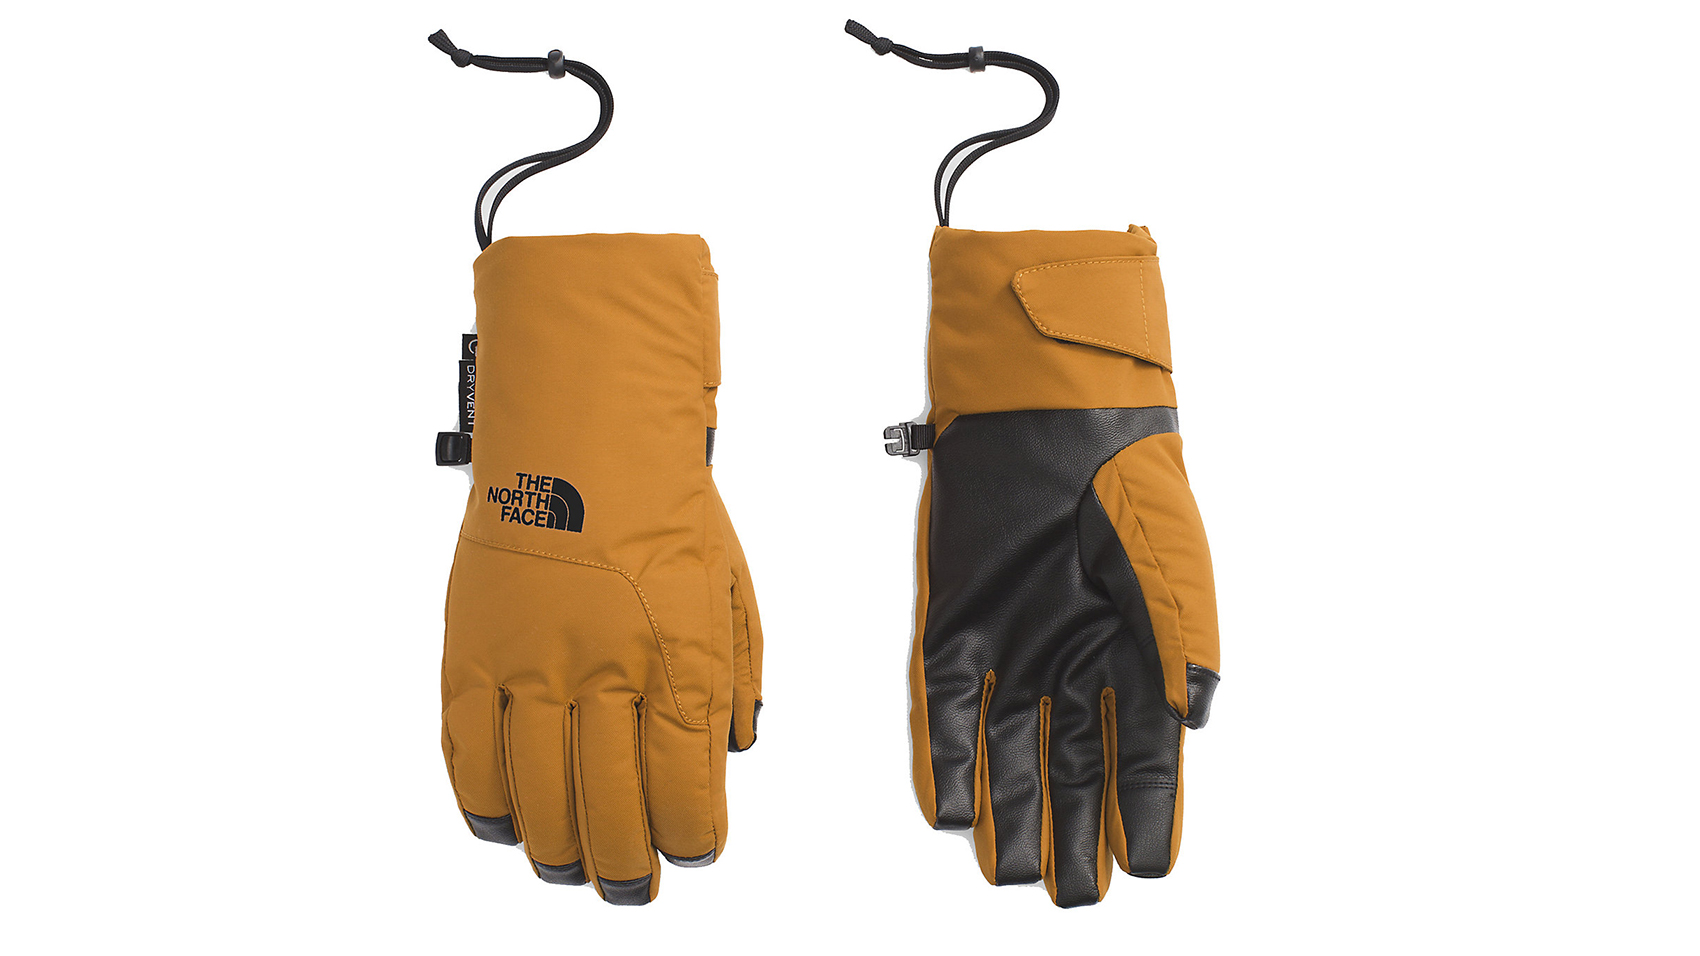 warmest etip gloves